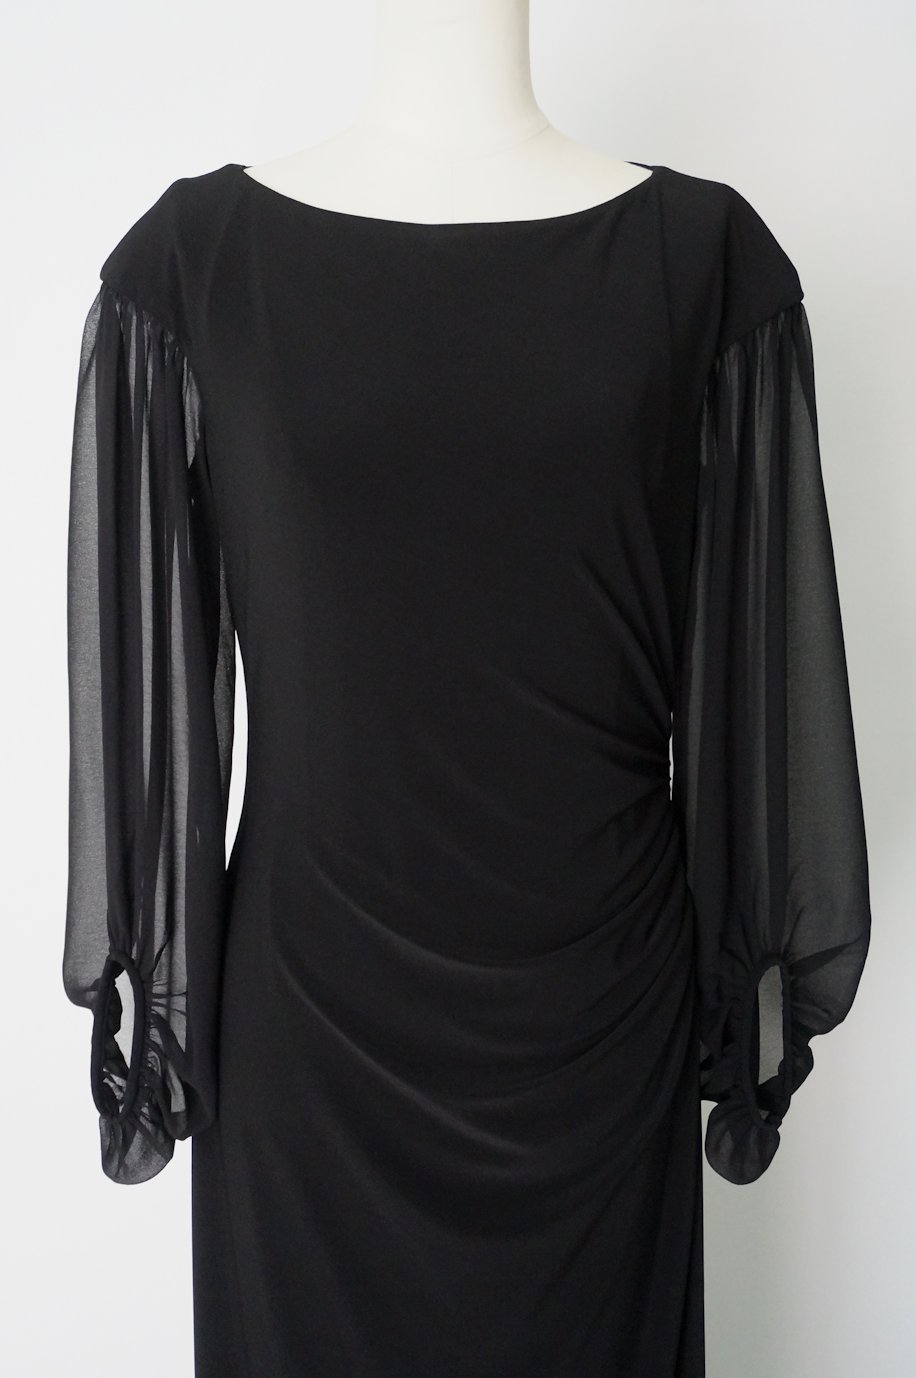 ラルフローレン シフォン7分袖のロングドレス サイズ4 / レンタルリトルブラックドレス テン Rental Little Black Dress ten.